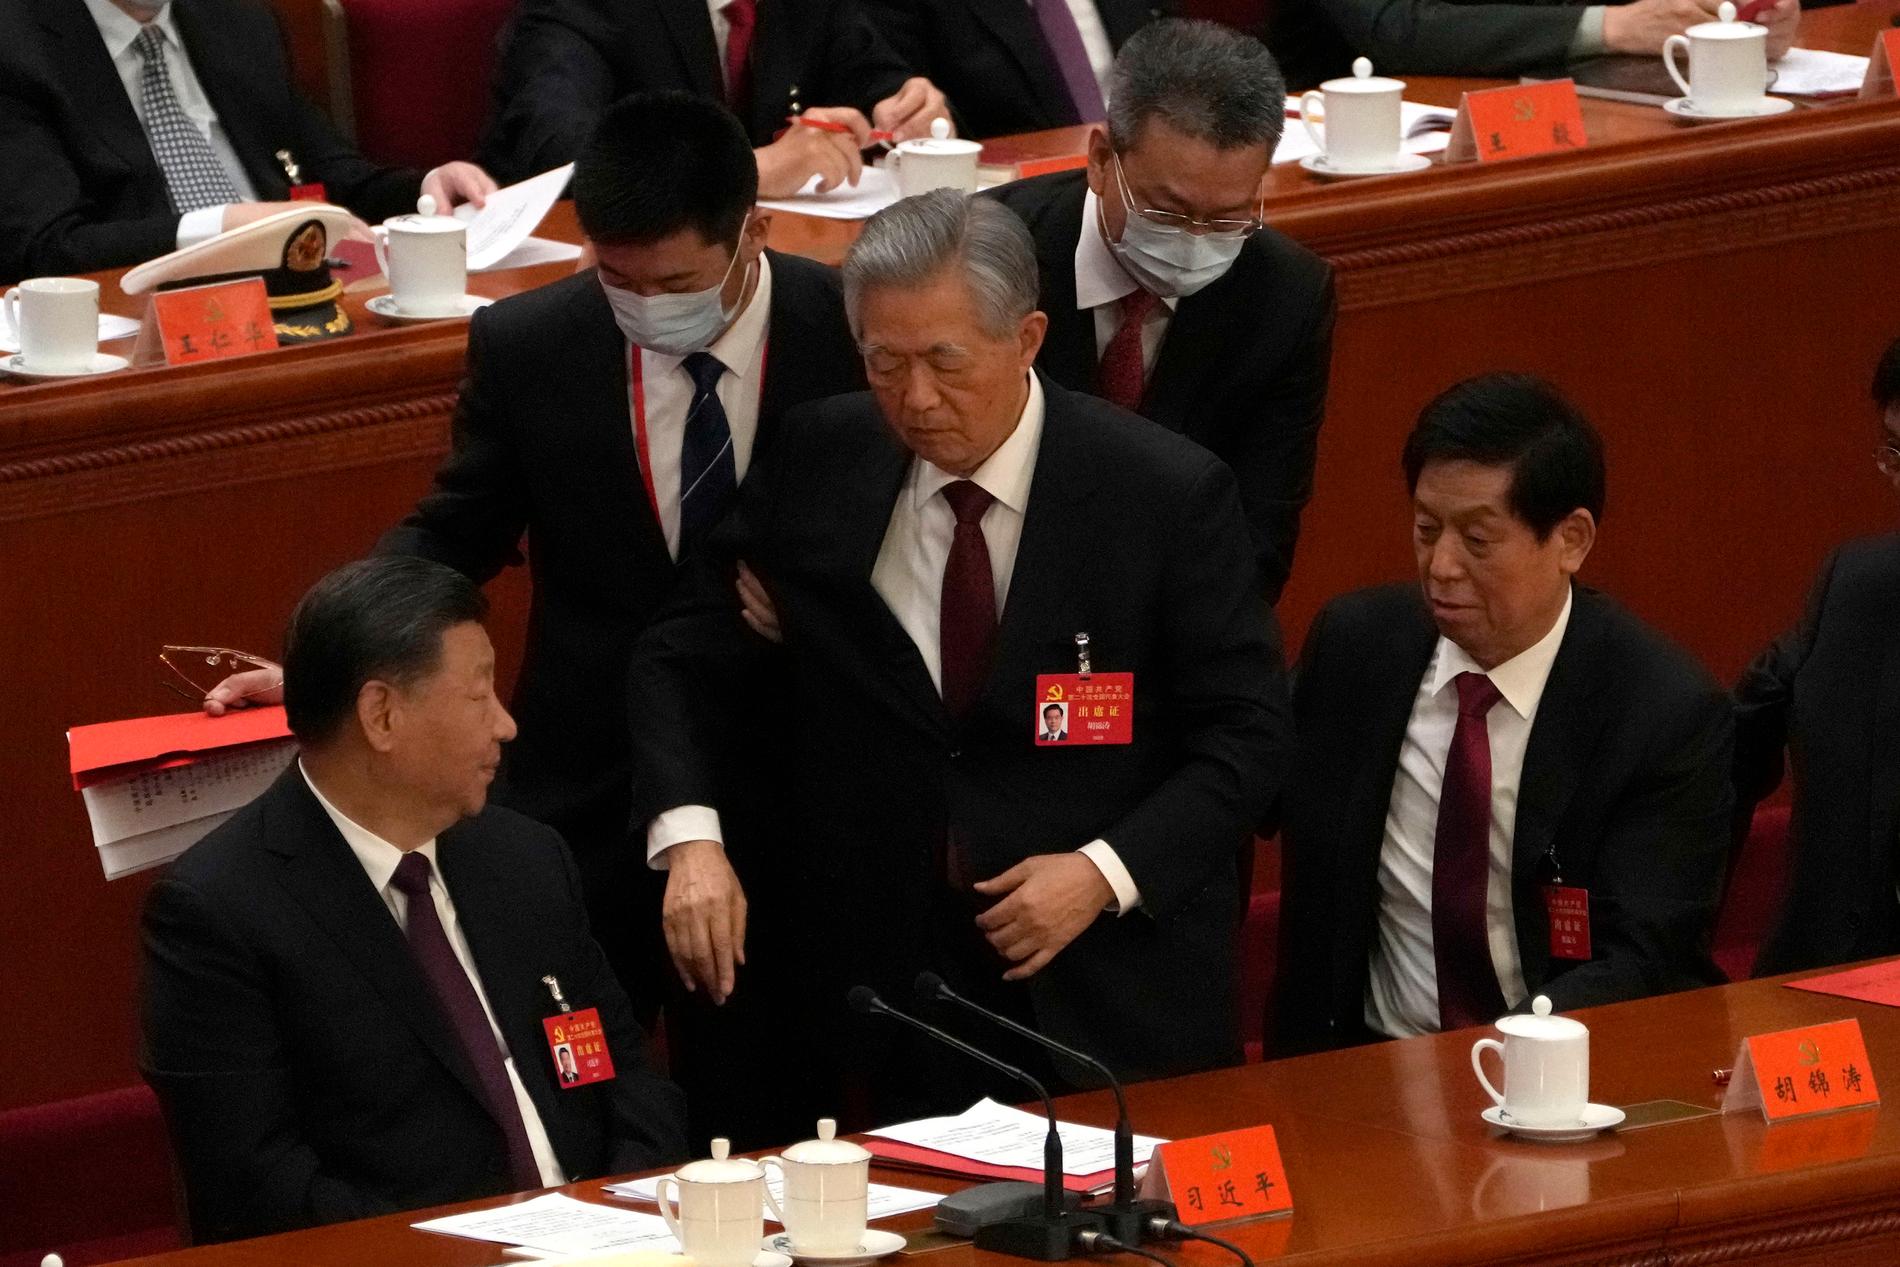 Kinas tidigare president och generalsekreterare Hu Jintao, stående i mitten, leds ut från avslutningsceremonin under Kommunistpartiets kongress.